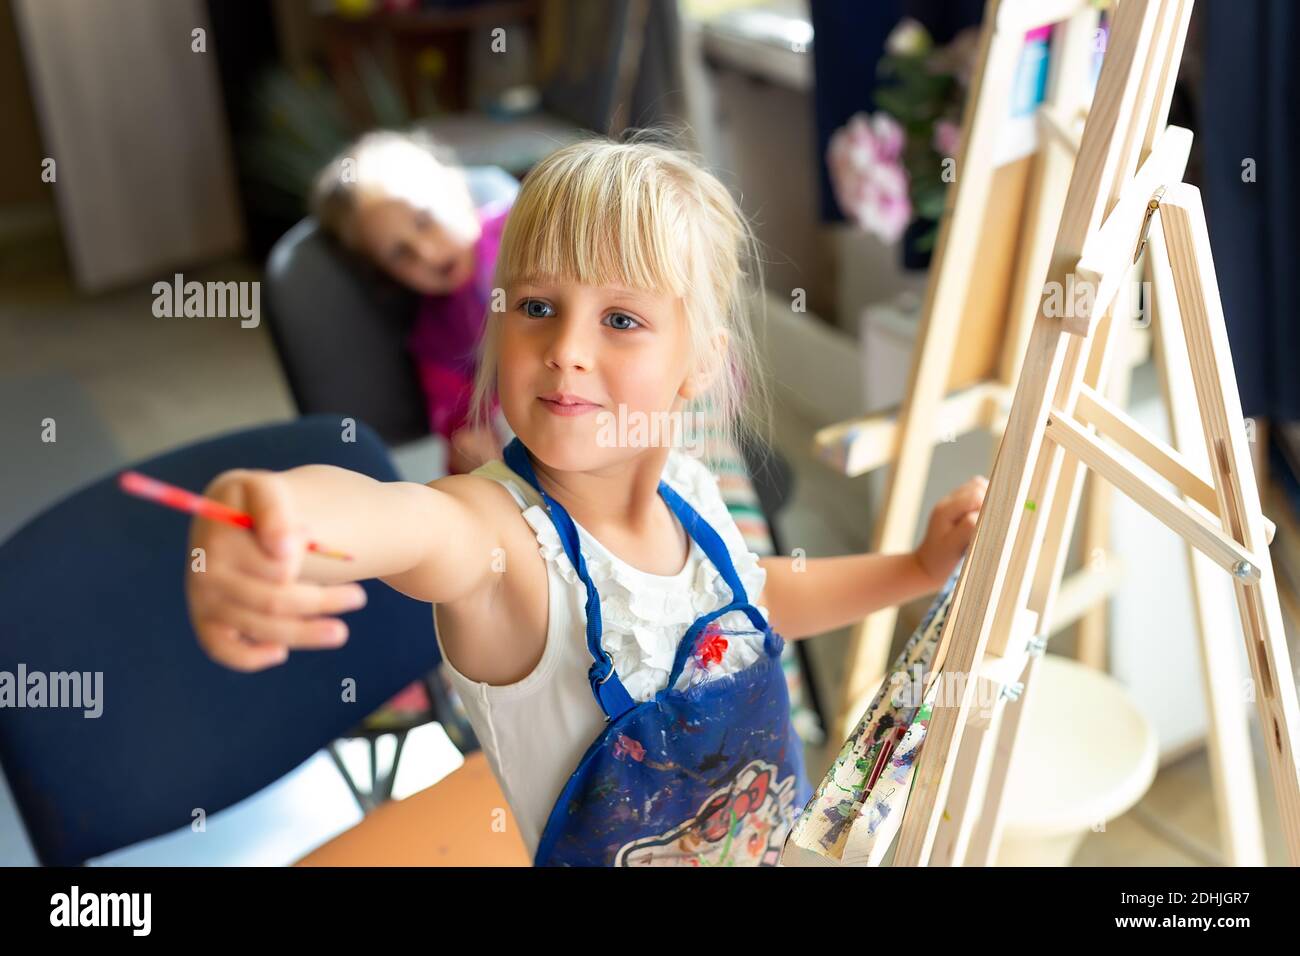 Cute blonde lächelnd kaukasischen Kind Malerei auf Holz Staffelei in der Klasse Workshop Lektion im Kunststudio. Kleines Mädchen hält Pinsel in der Hand und Spaß haben Stockfoto